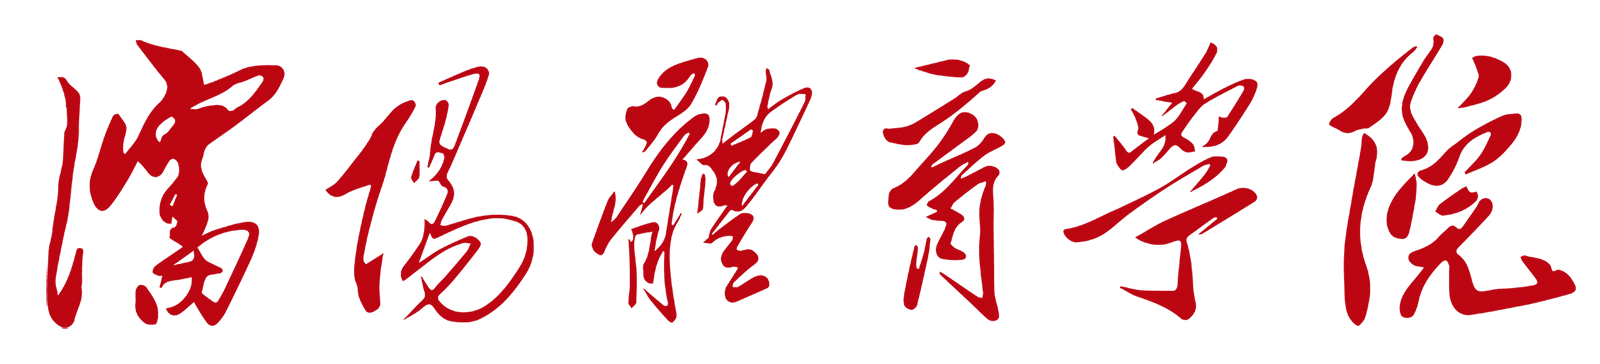 沈阳体育学院校徽logo矢量标志素材